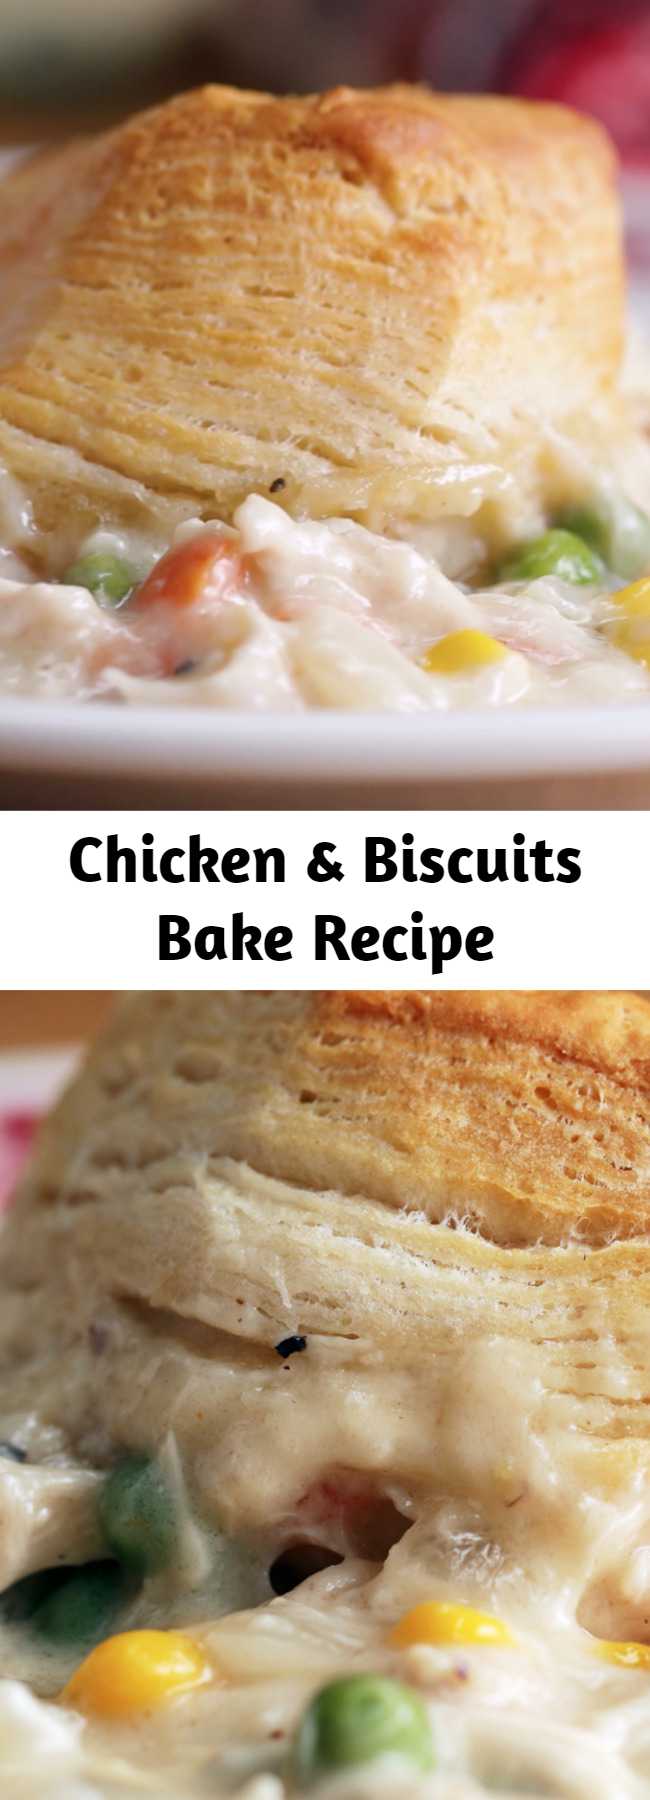 Chicken & Biscuits Bake Recipe